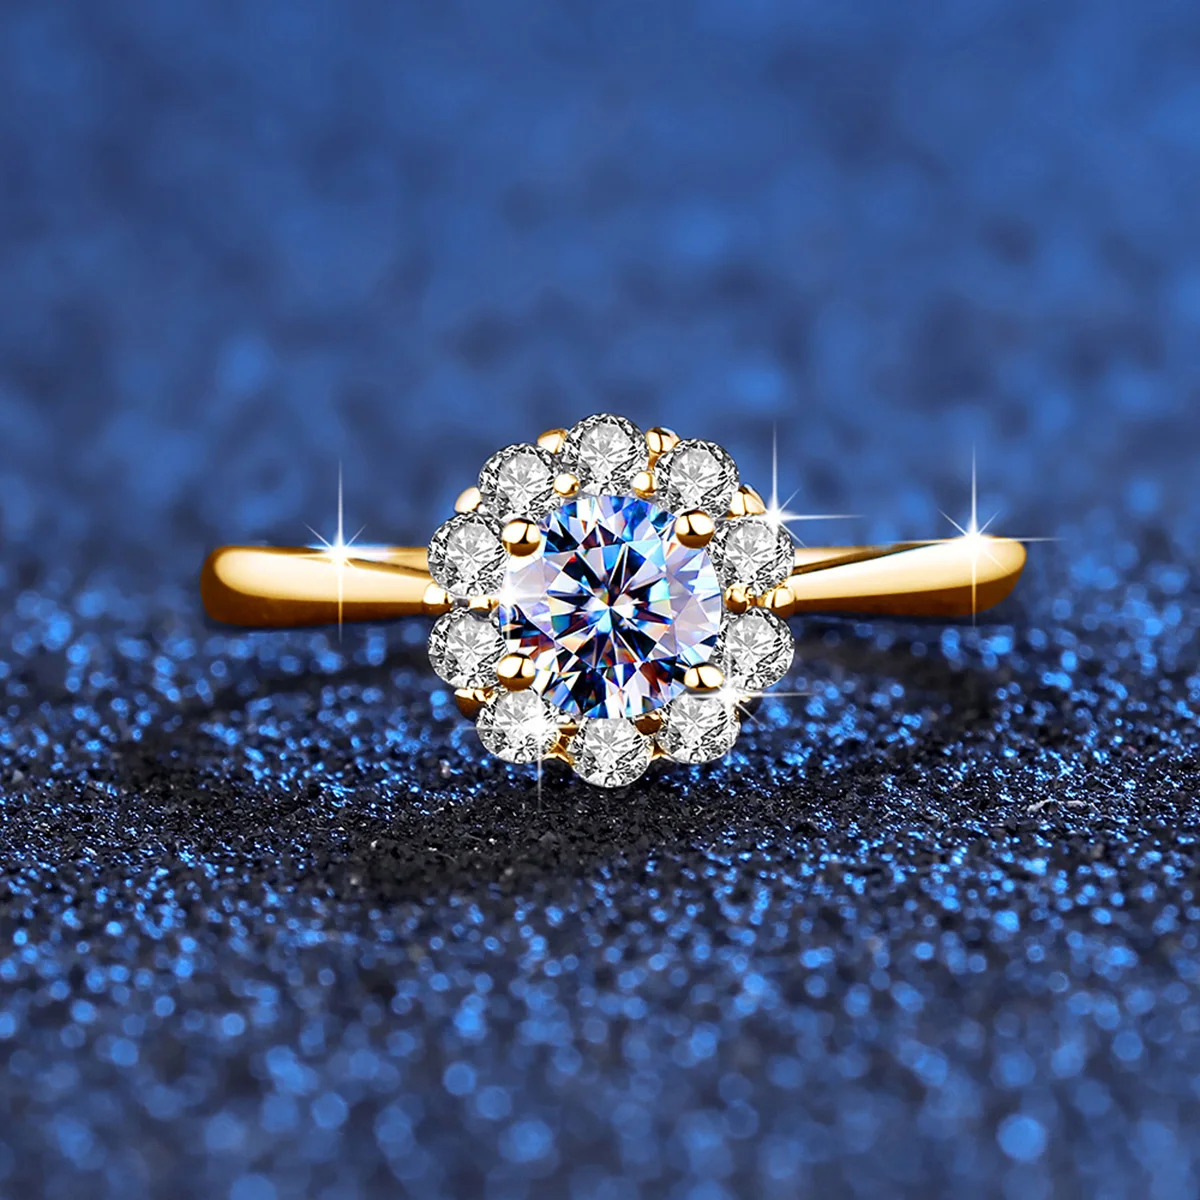 Diamond Ring Design with Price || Real Diamond Rings || Latest Diamond Rings  2023 - YouTube